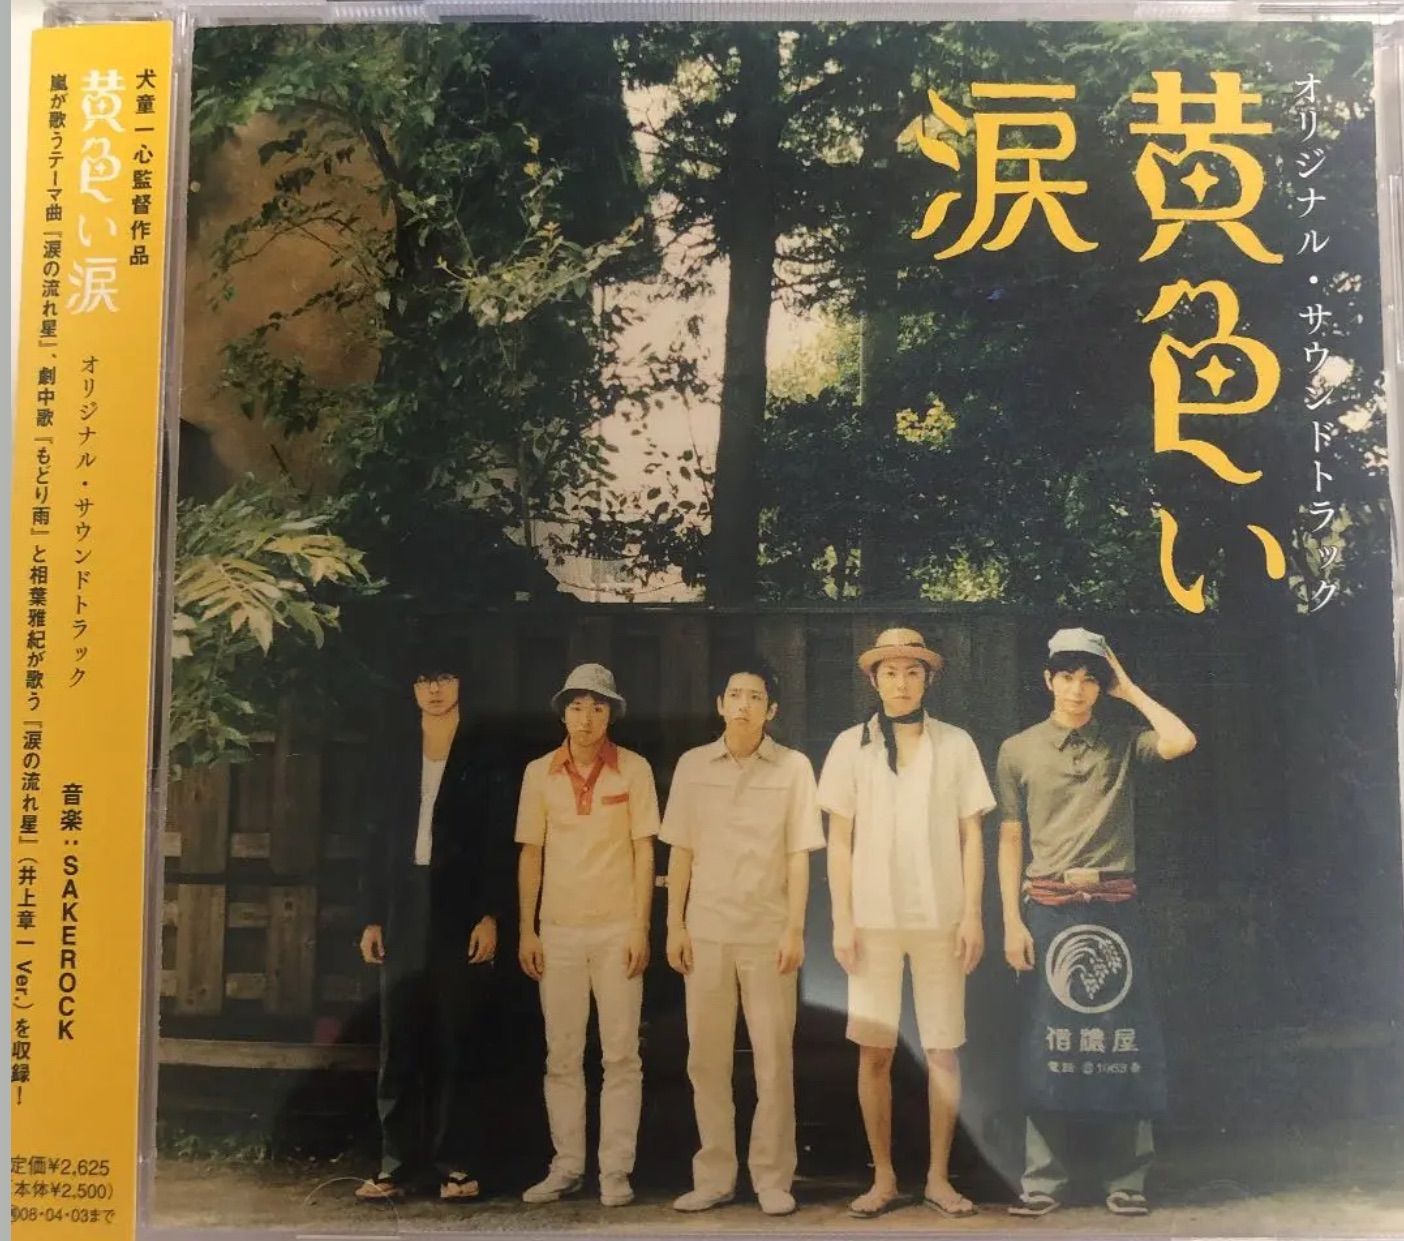 嵐 CD 黄色い涙 オリジナル・サウンドトラック SAKEROCK 女性が喜ぶ ...